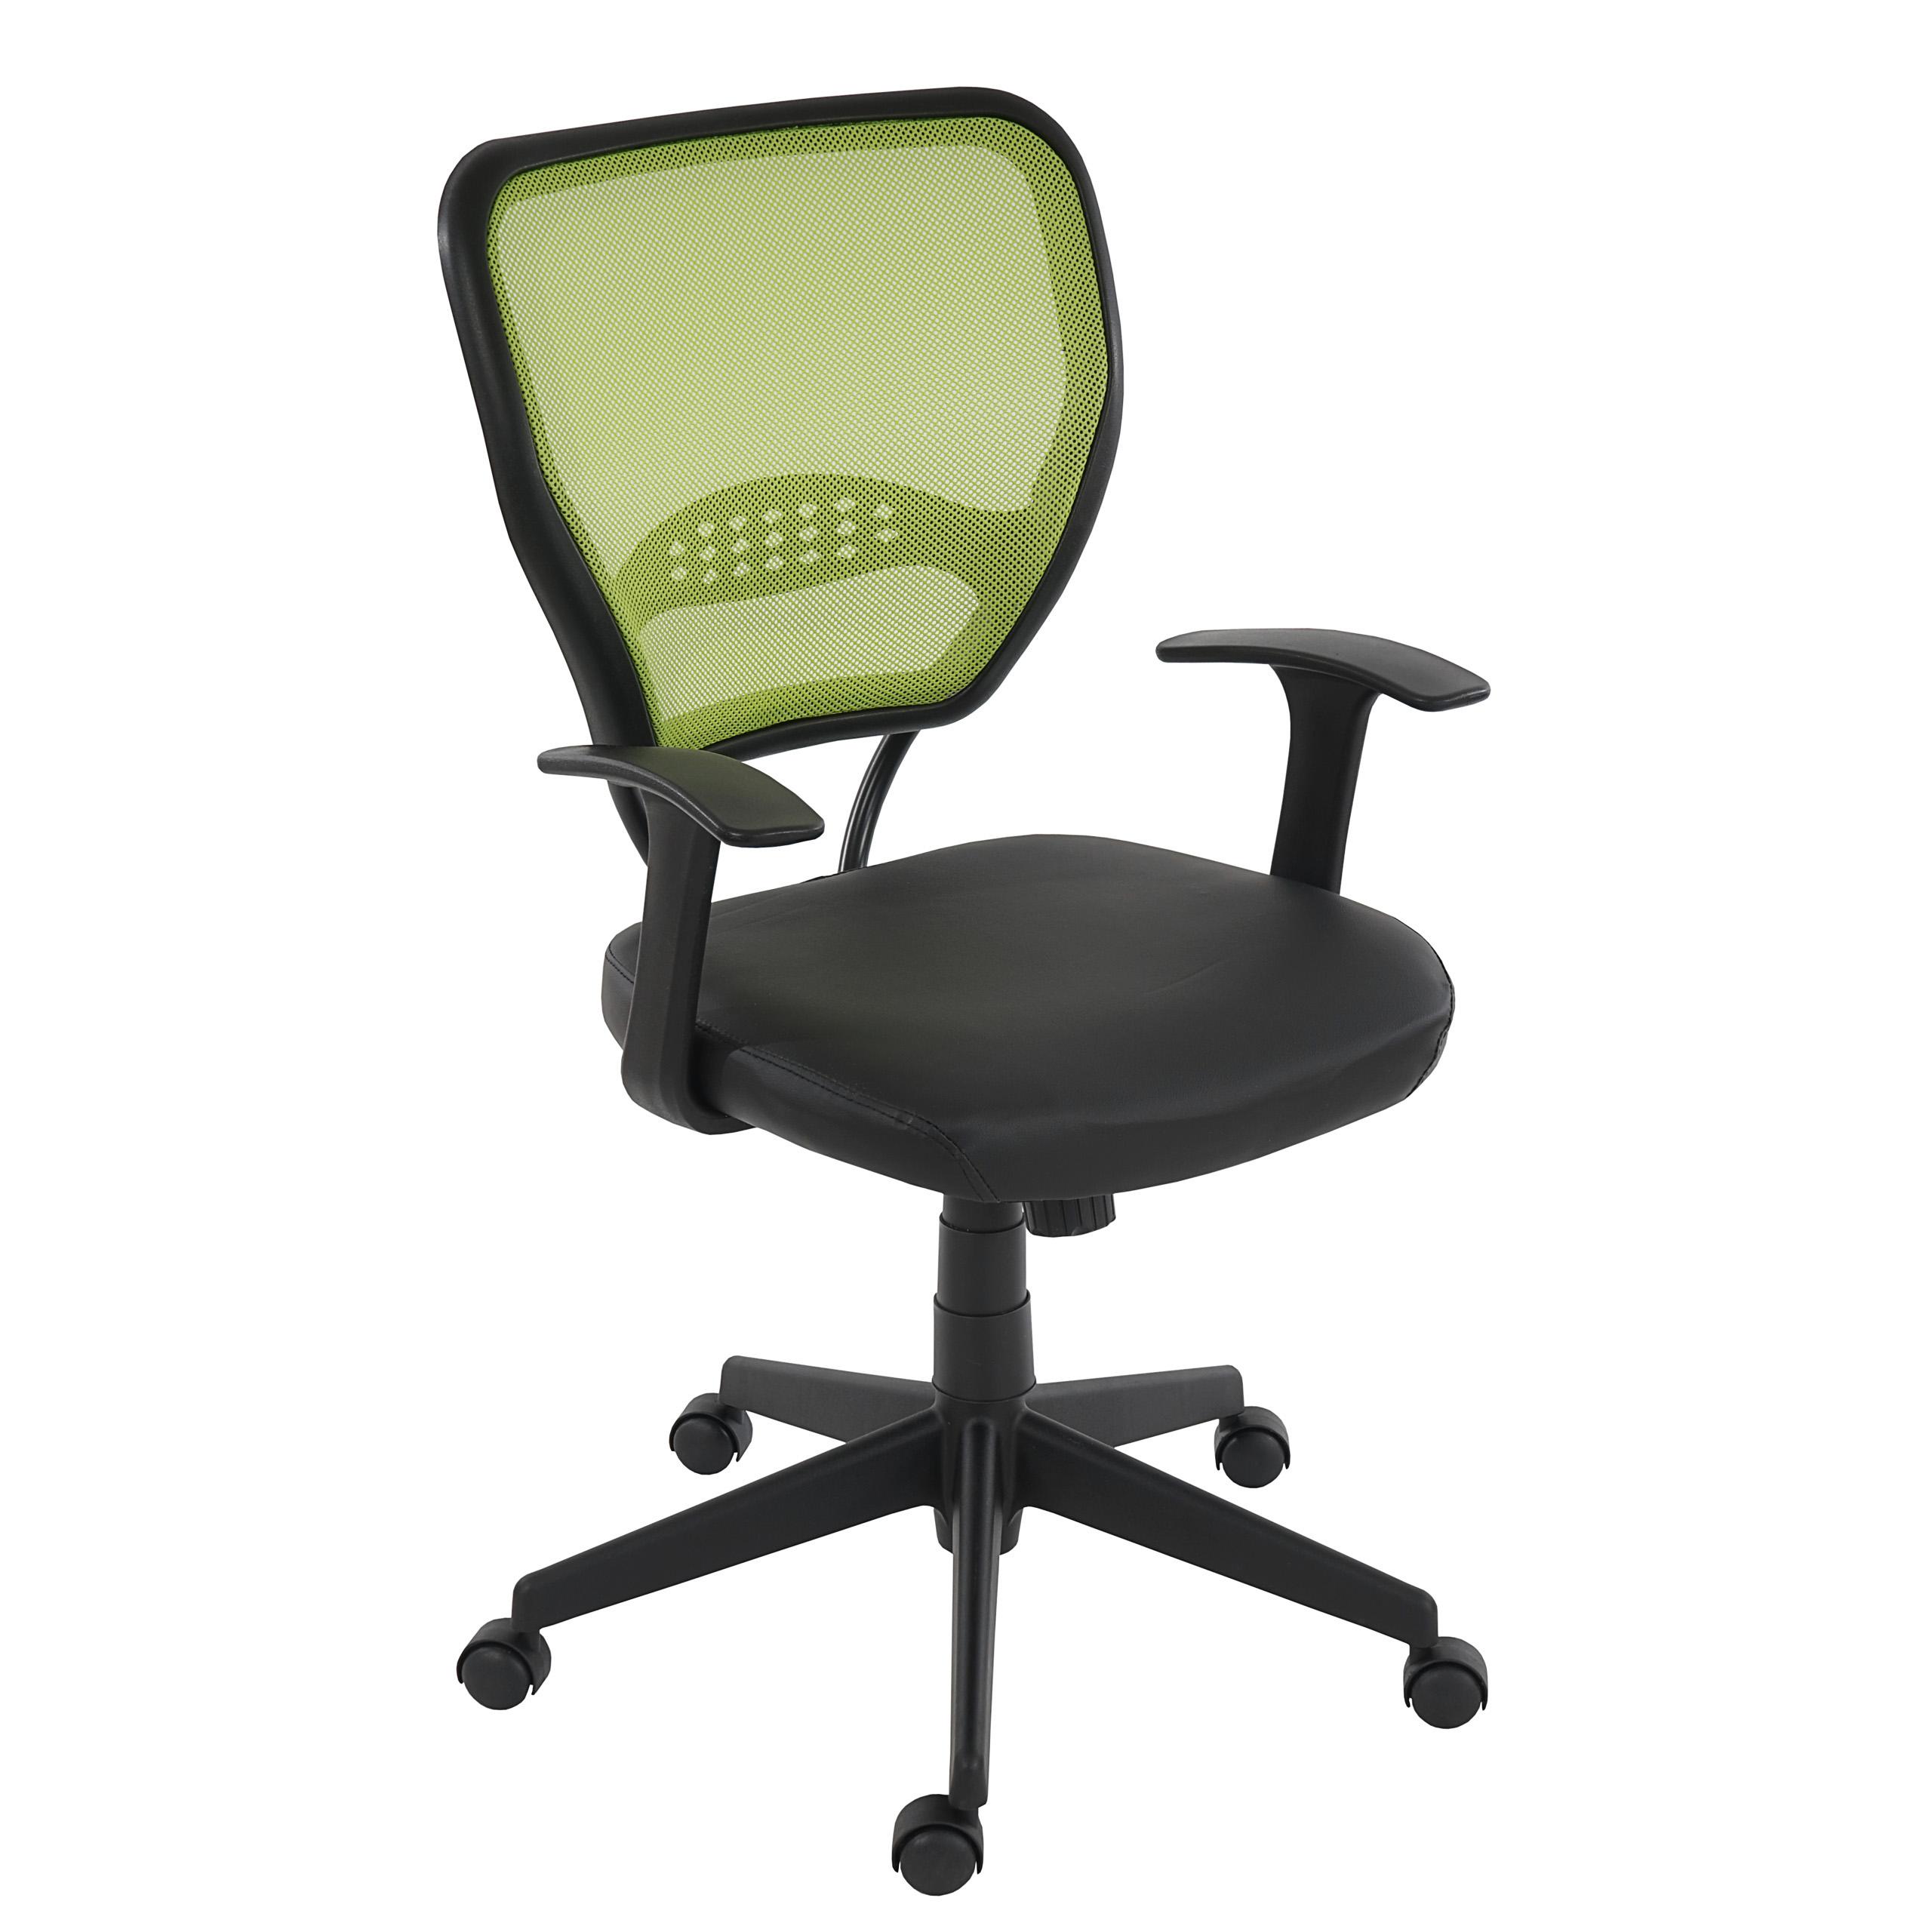 XXL-Bürostuhl TENOYA LEDER, bequeme Sitzpolsterung, Rückenlehne mit Netzbezug, Farbe Grün